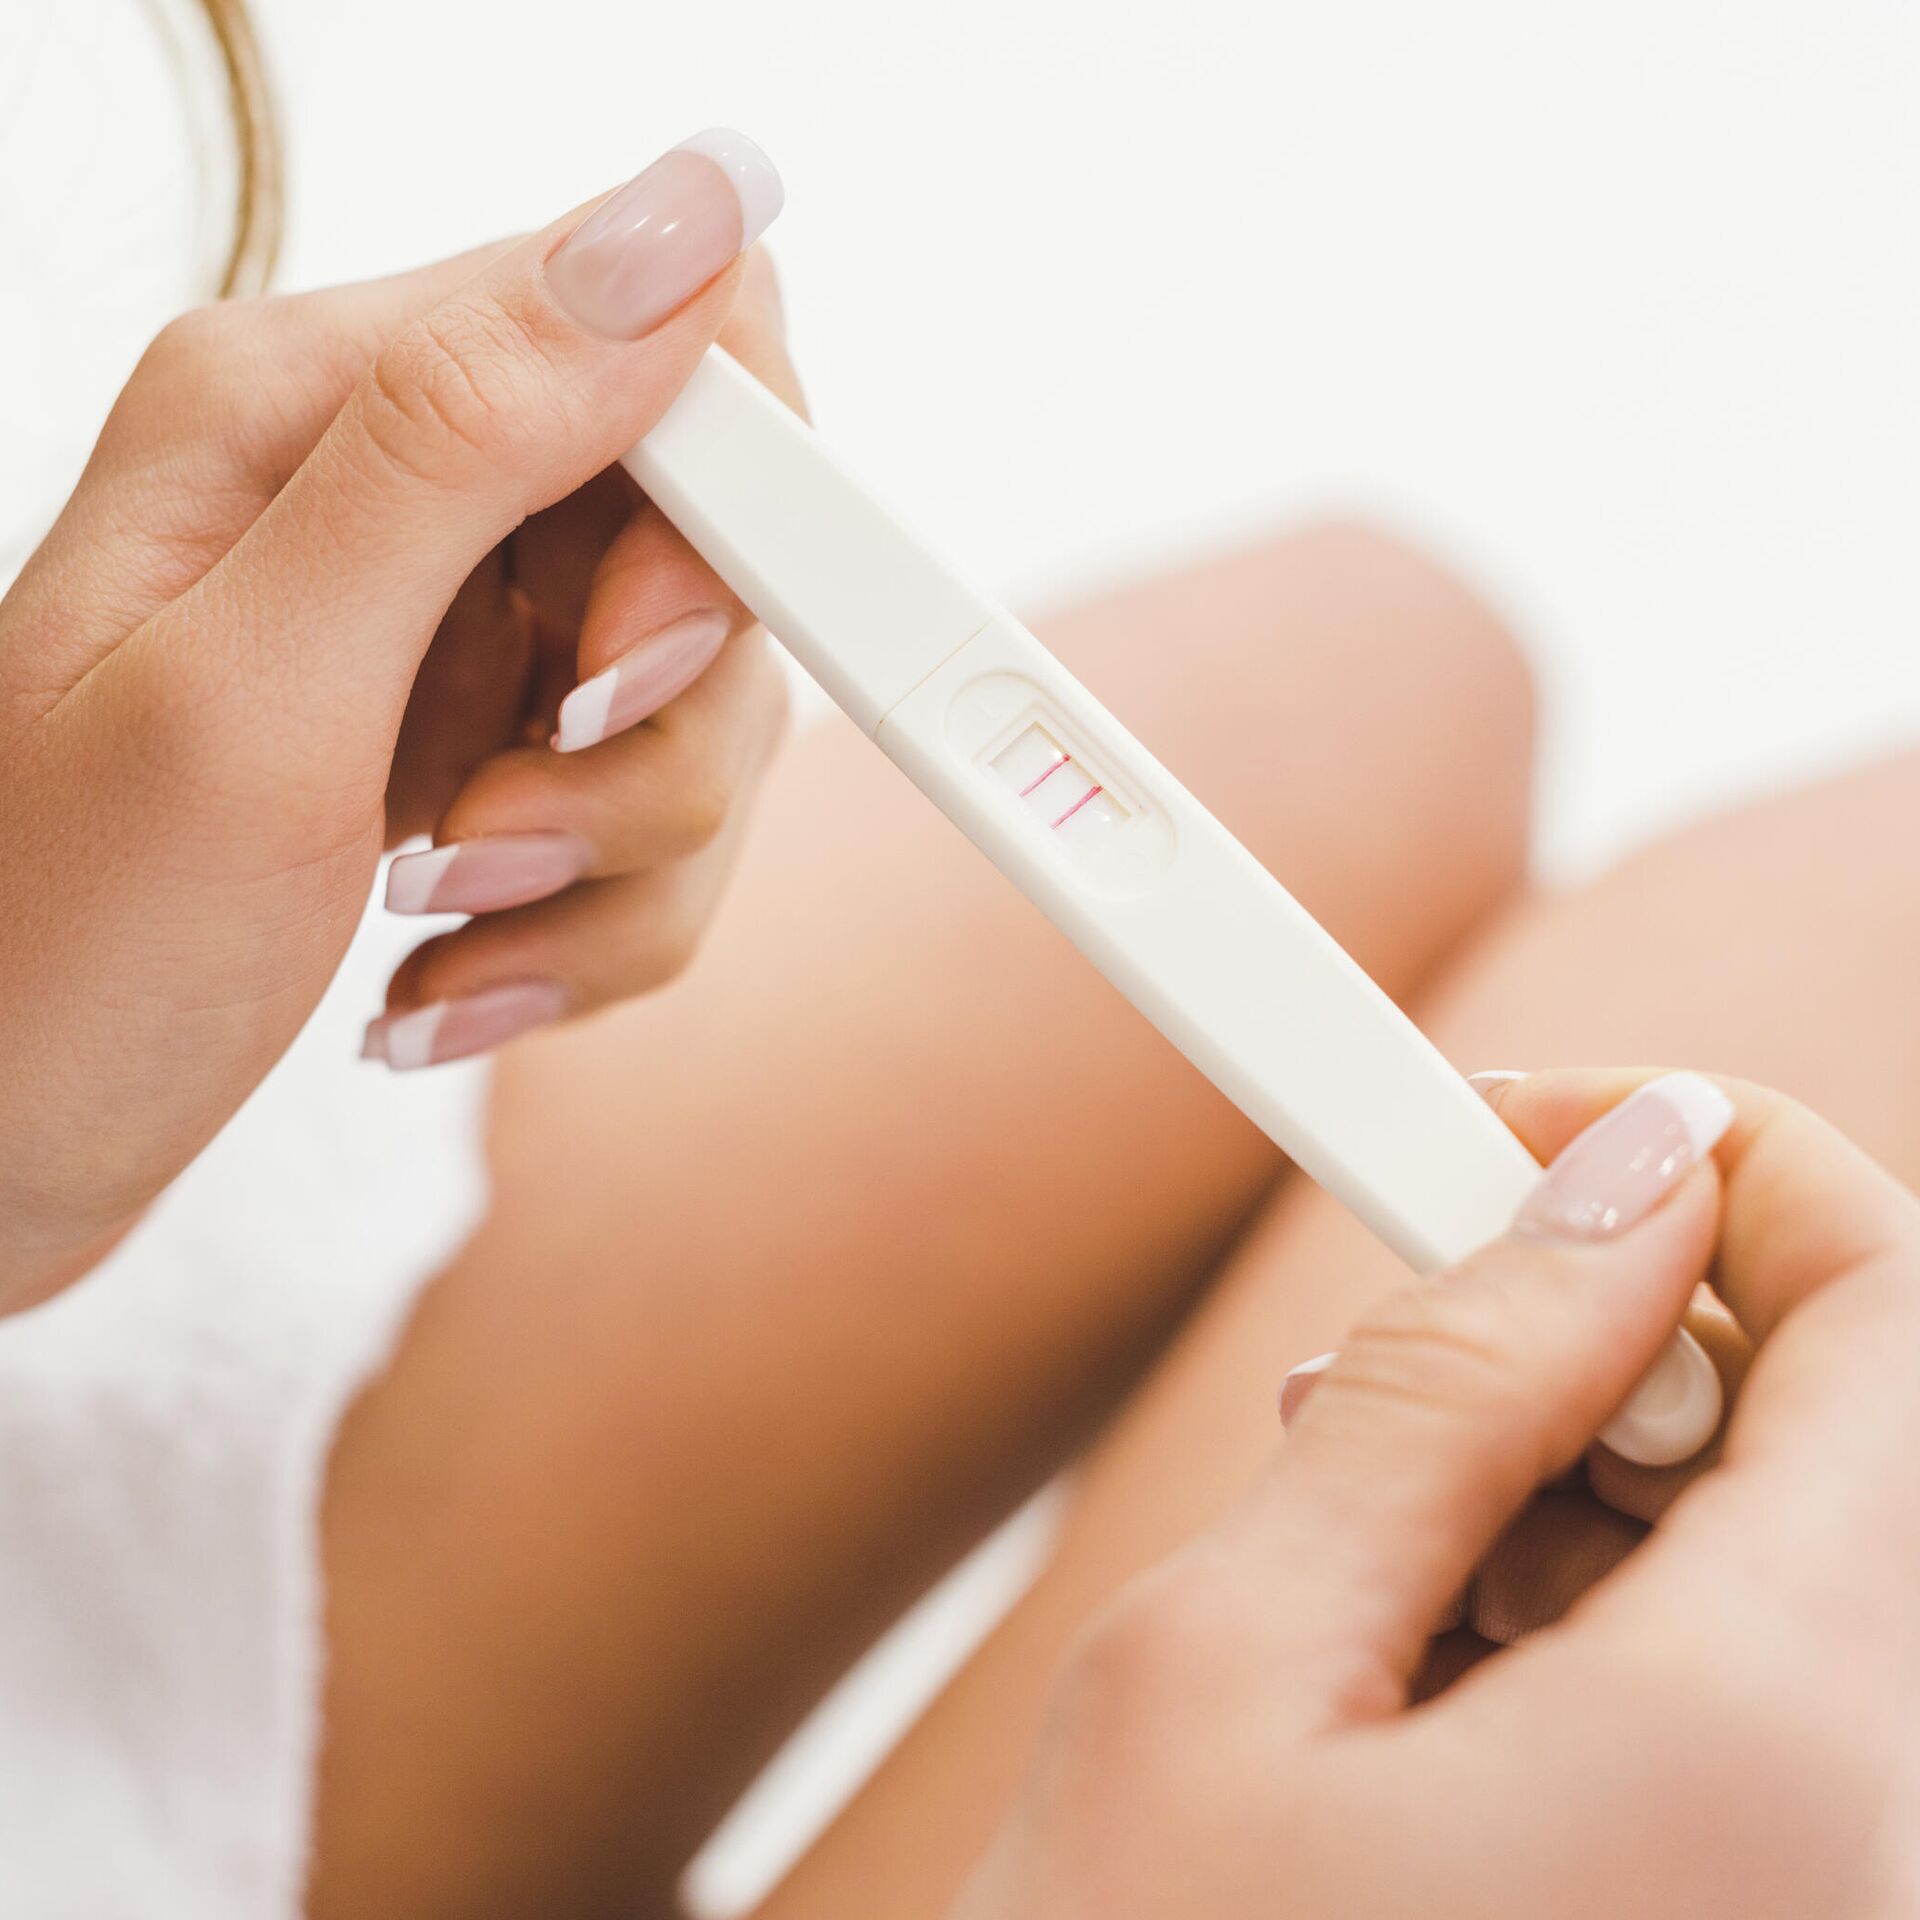 Можно ли второй раз пользоваться тестом на беременность?